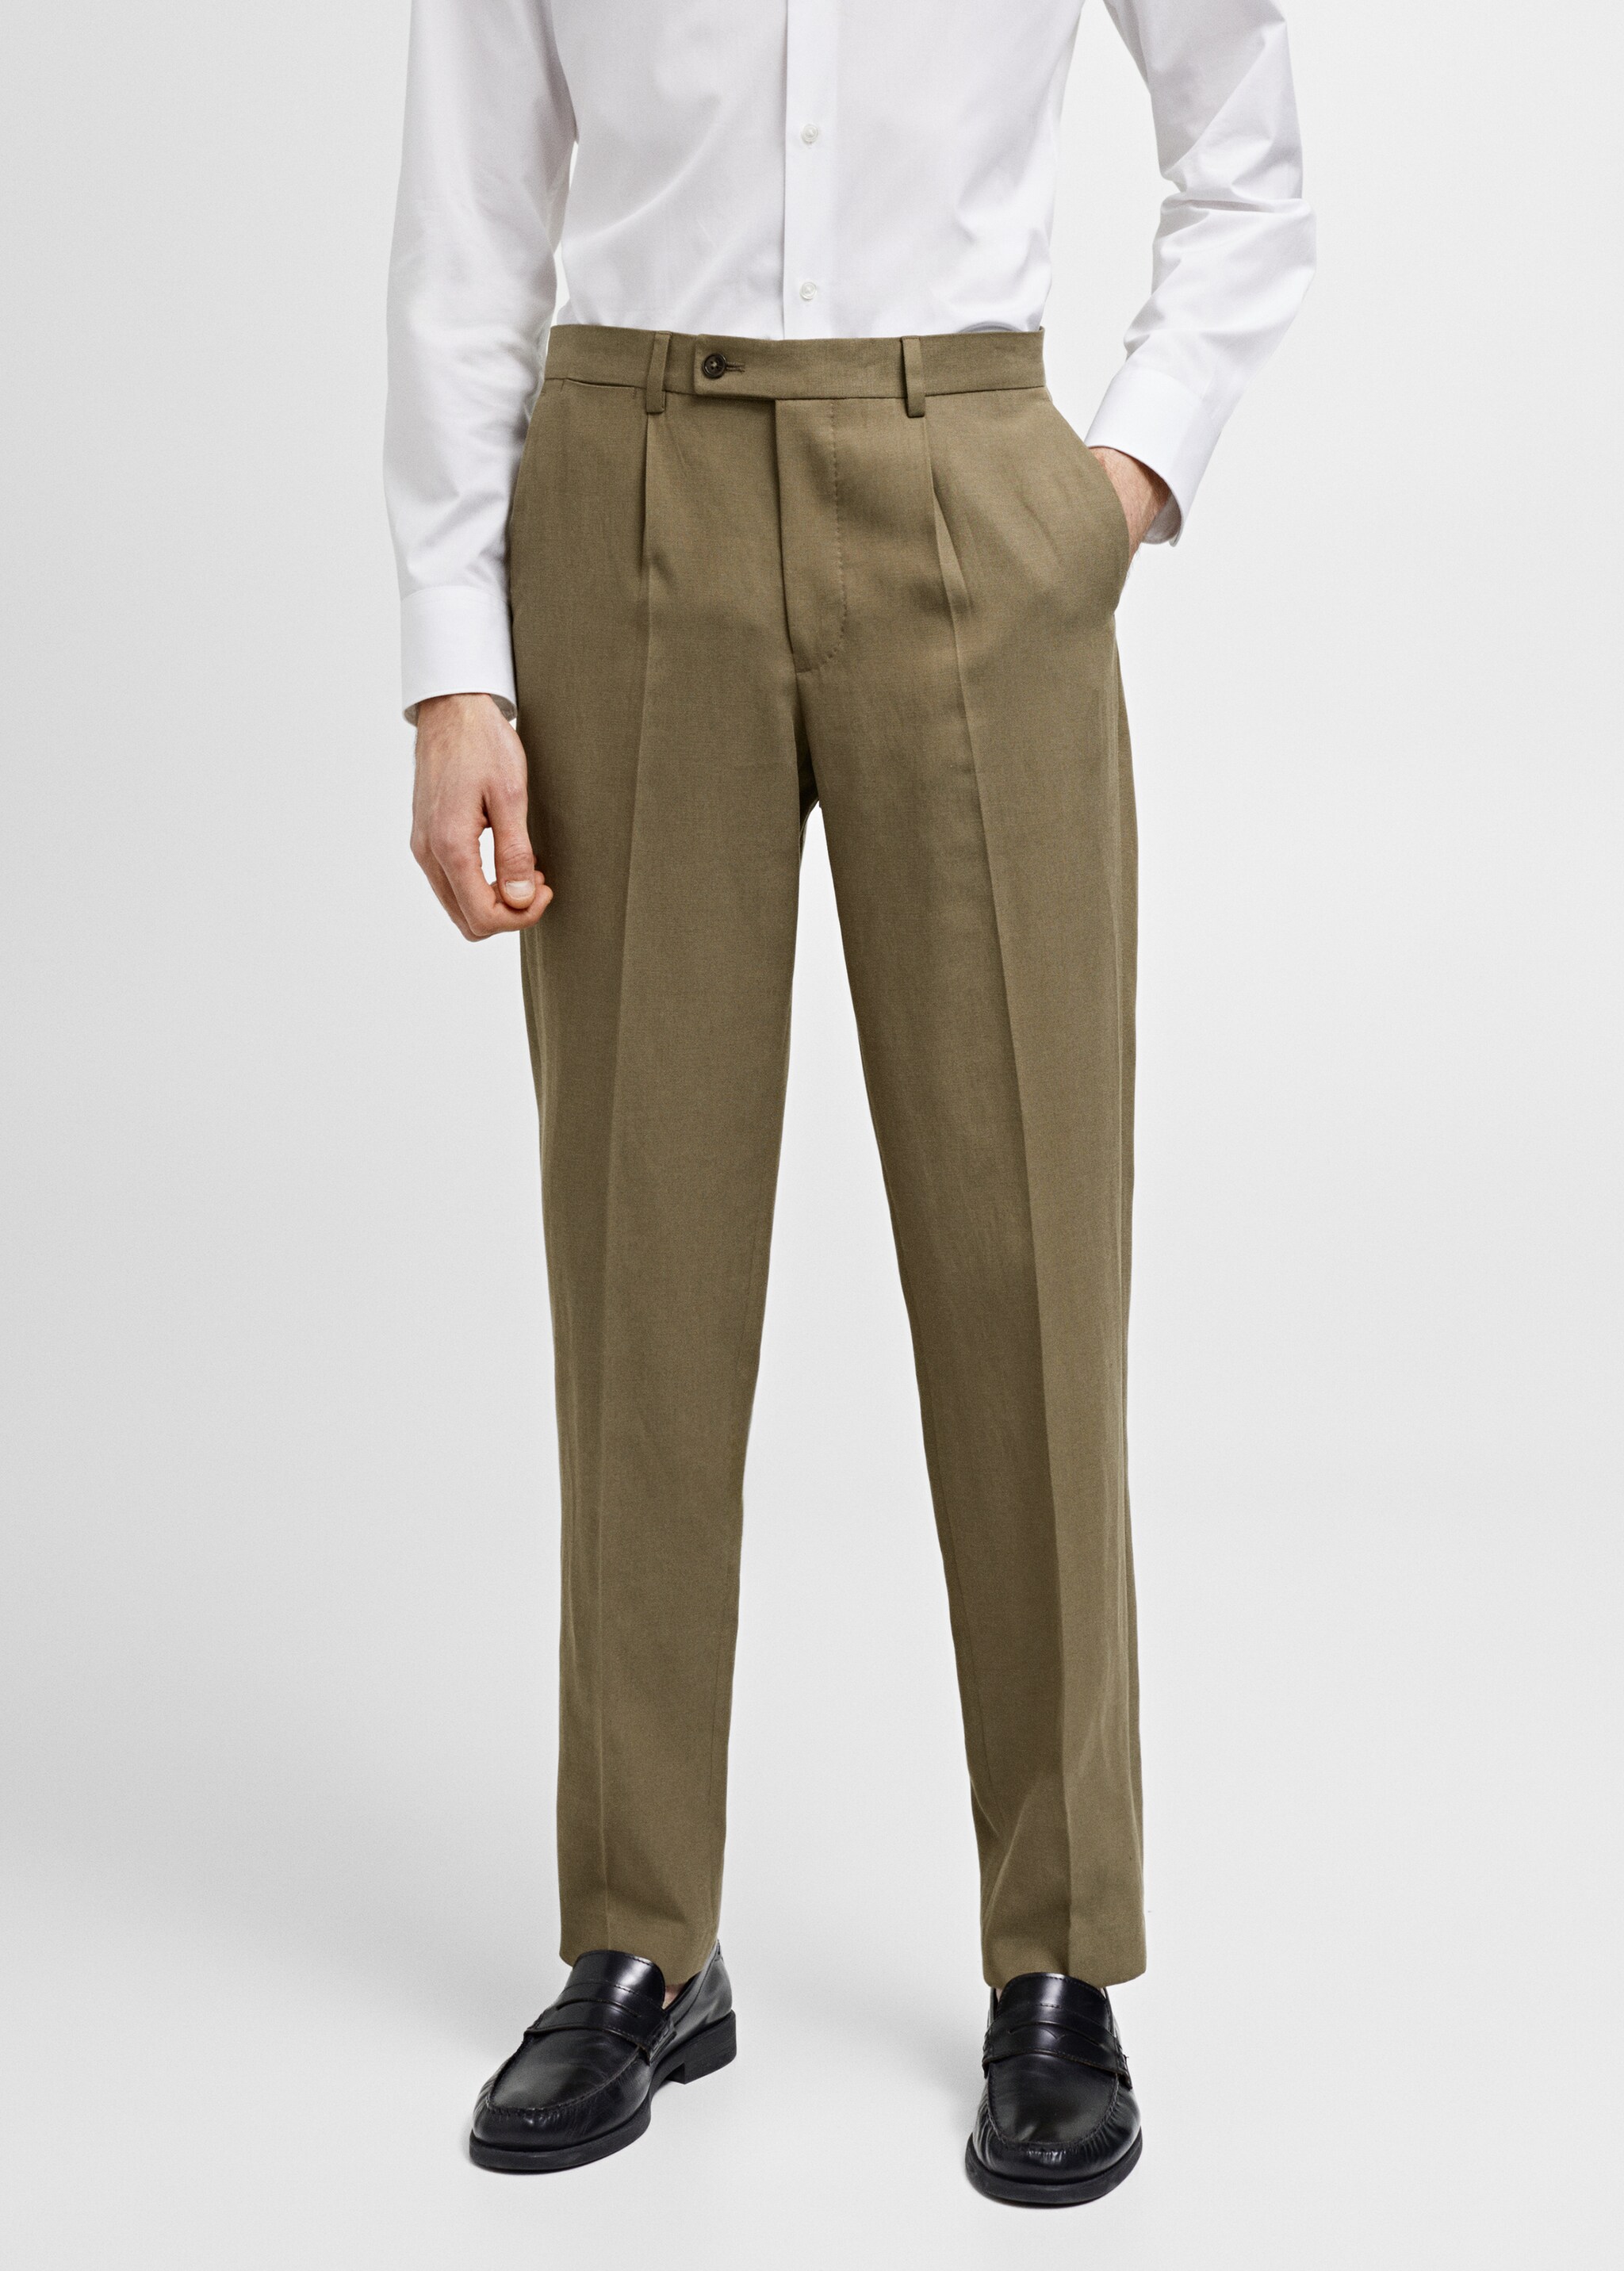 Pantalon costume slim fit pinces - Plan moyen